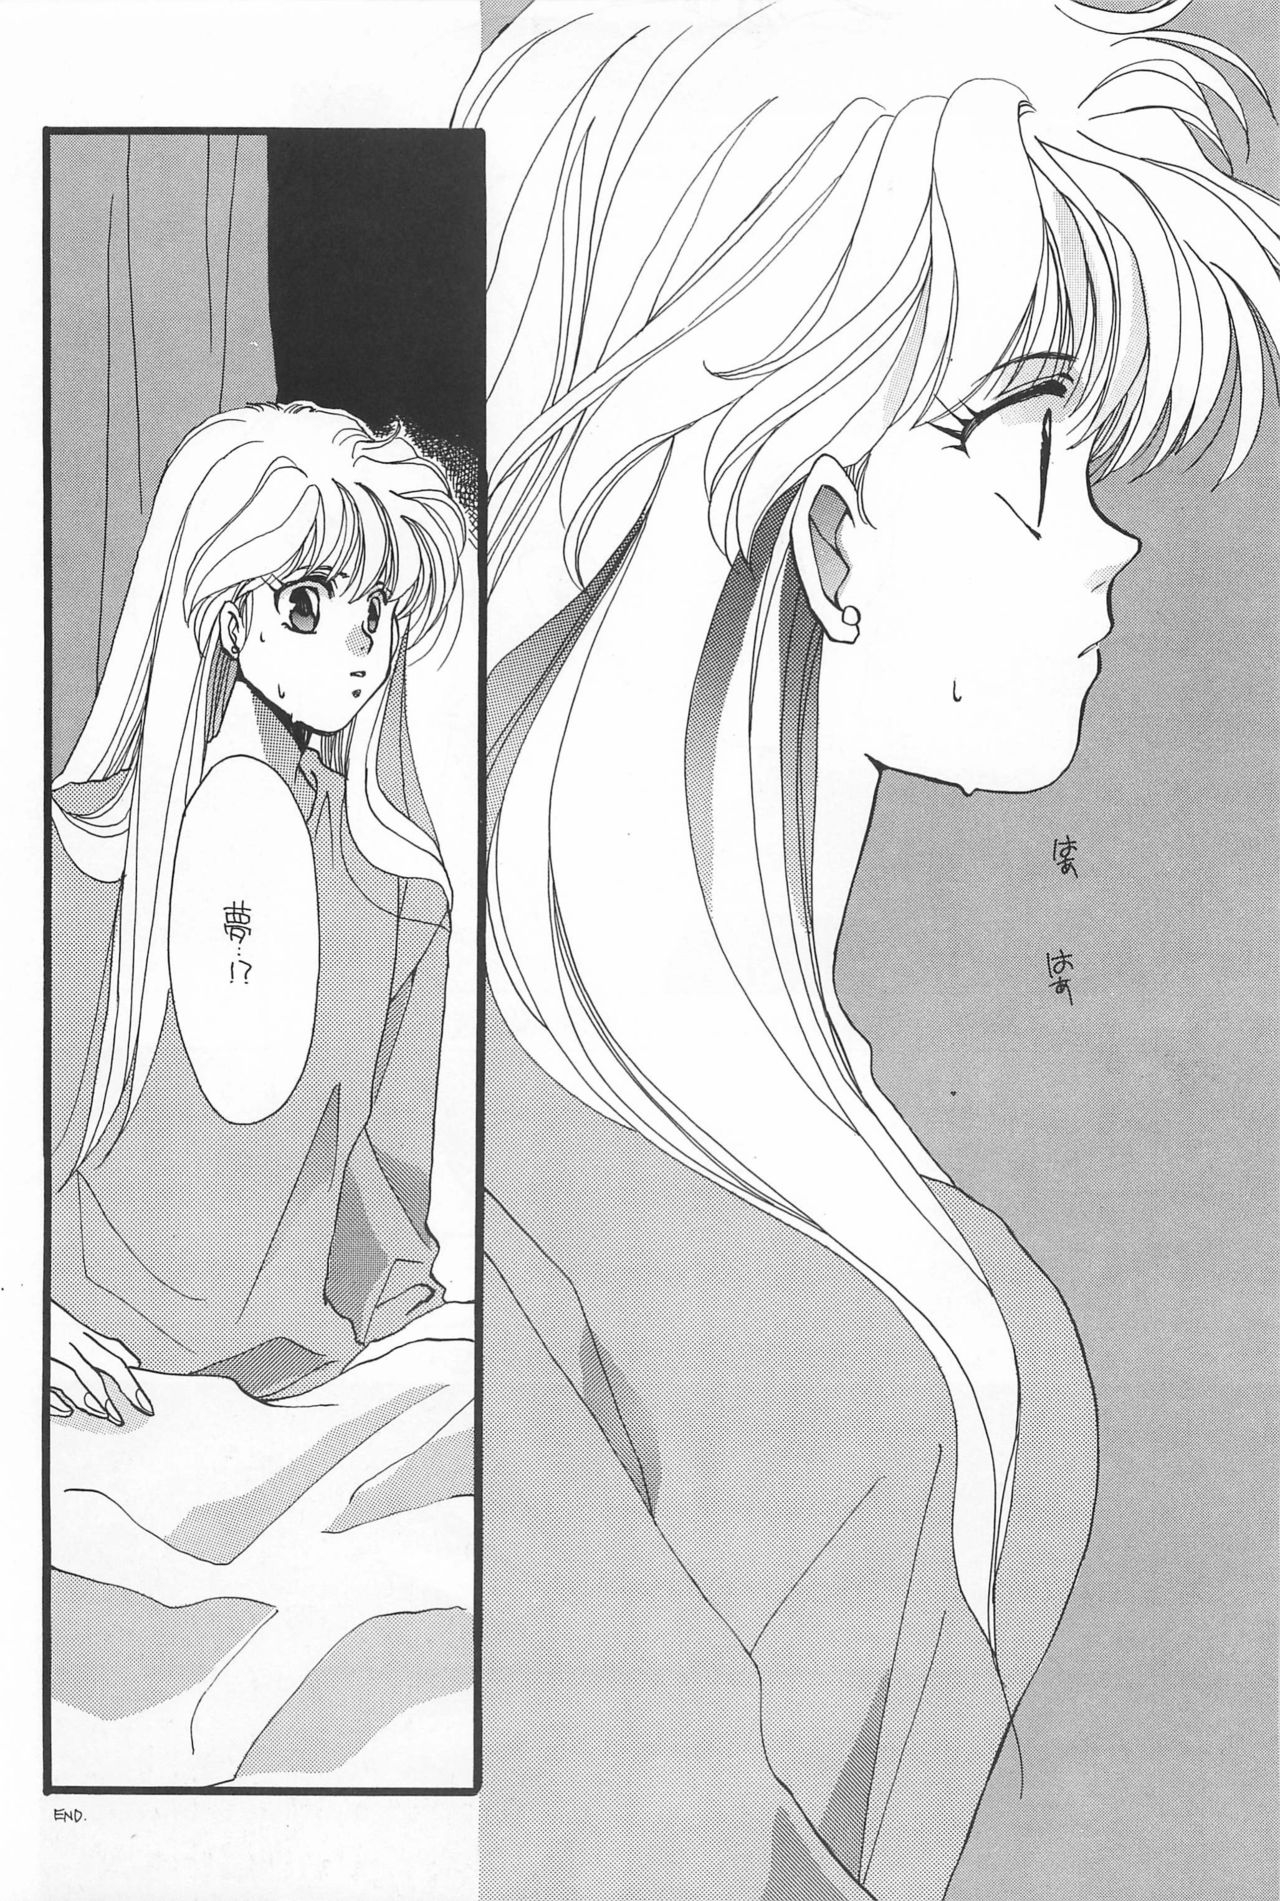 [Hello World (Muttri Moony)] Kaze no You ni Yume no You ni - Sailor Moon Collection (Sailor Moon) 99